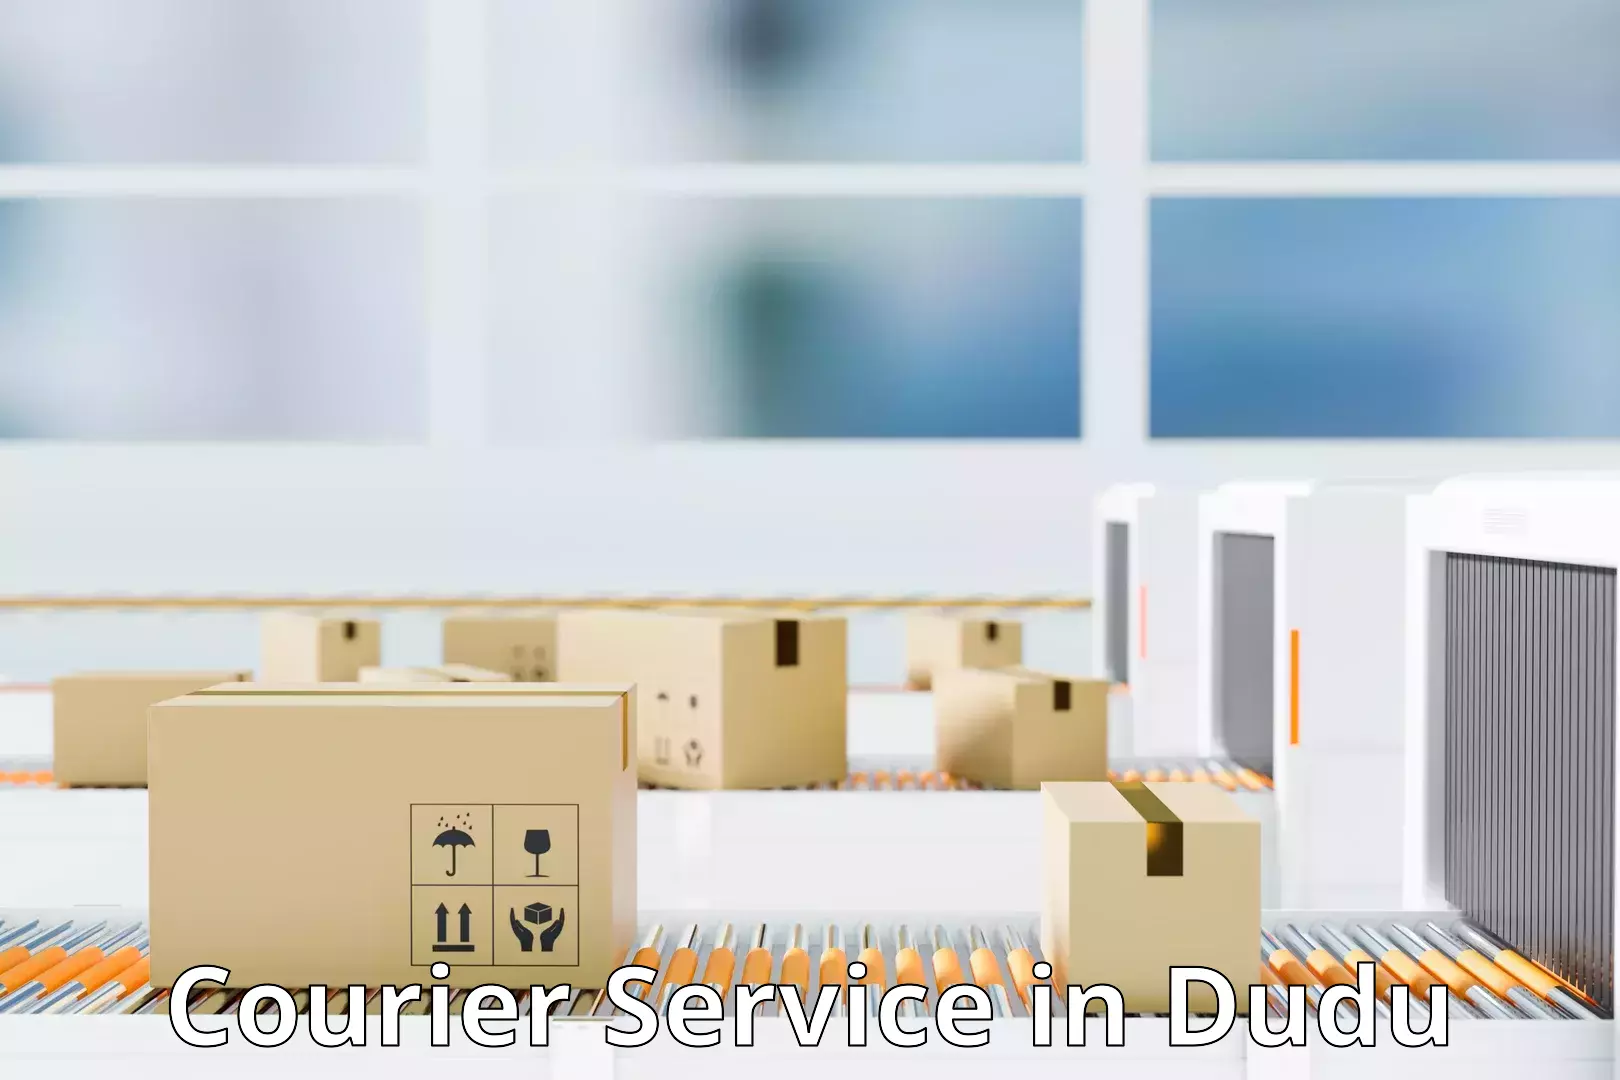 Urban courier service in Dudu